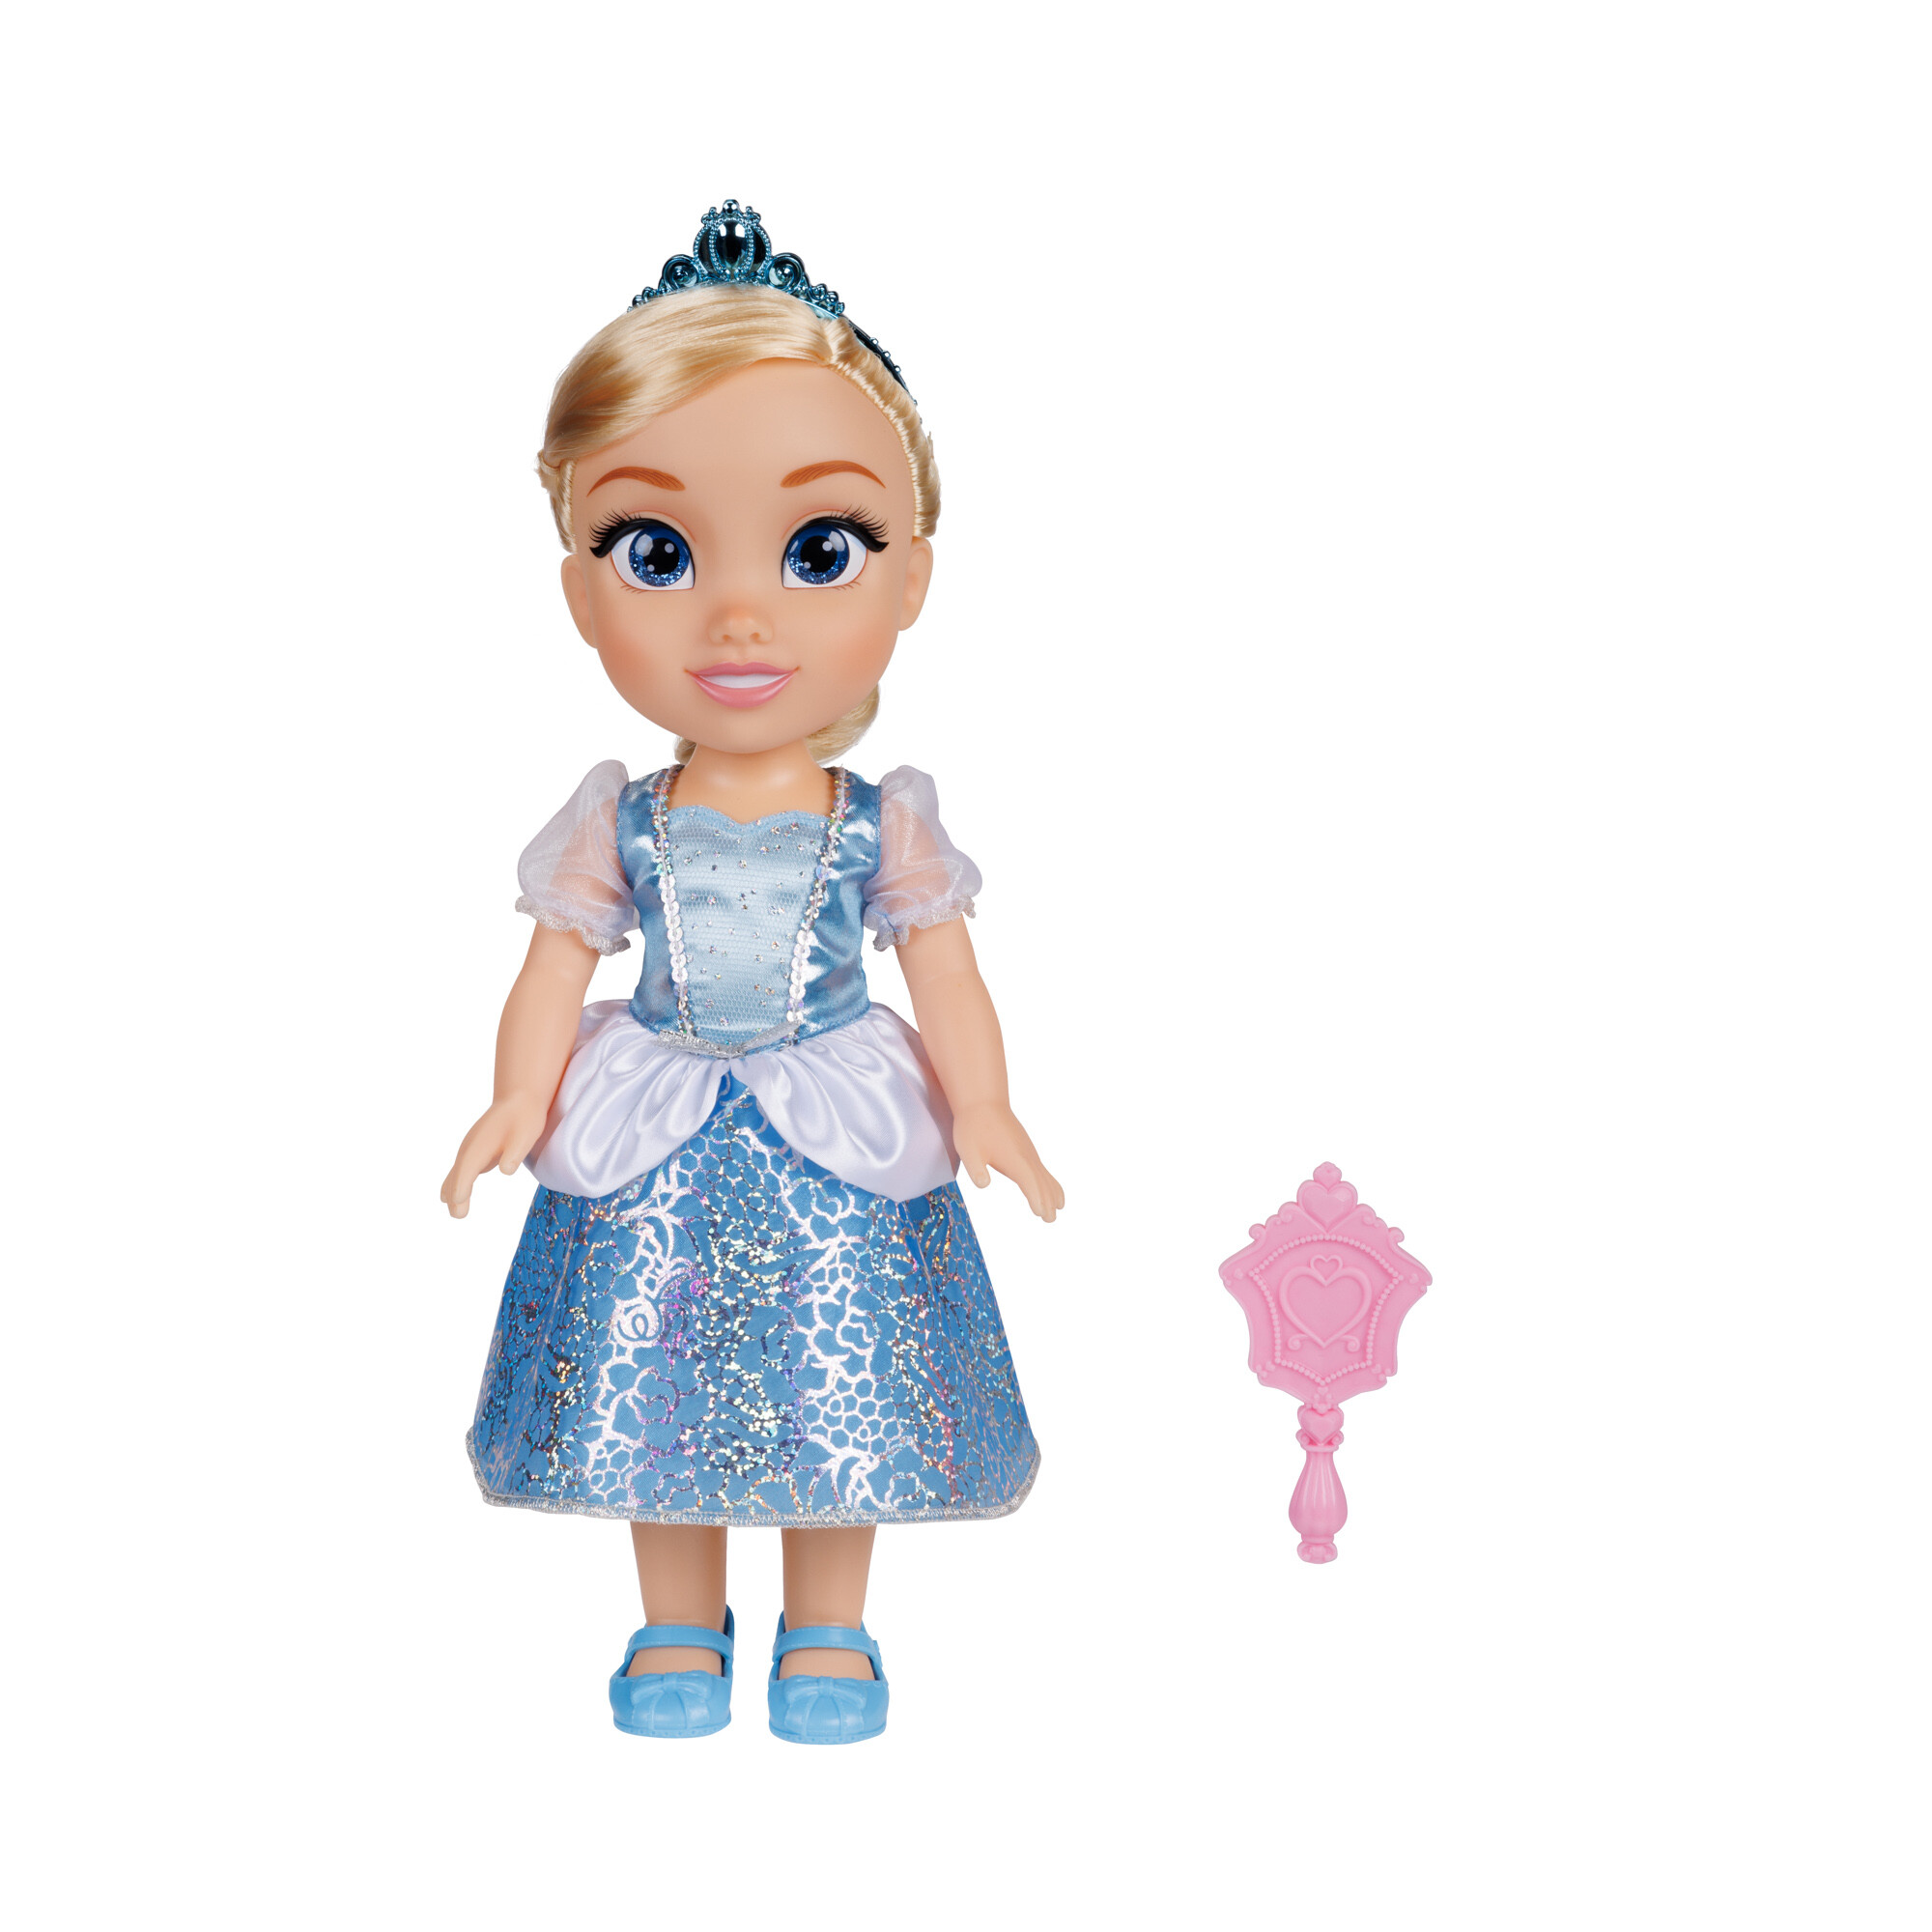 Disney princess bambola da 38 cm di cenerentola con occhi scintillanti! - DISNEY PRINCESS